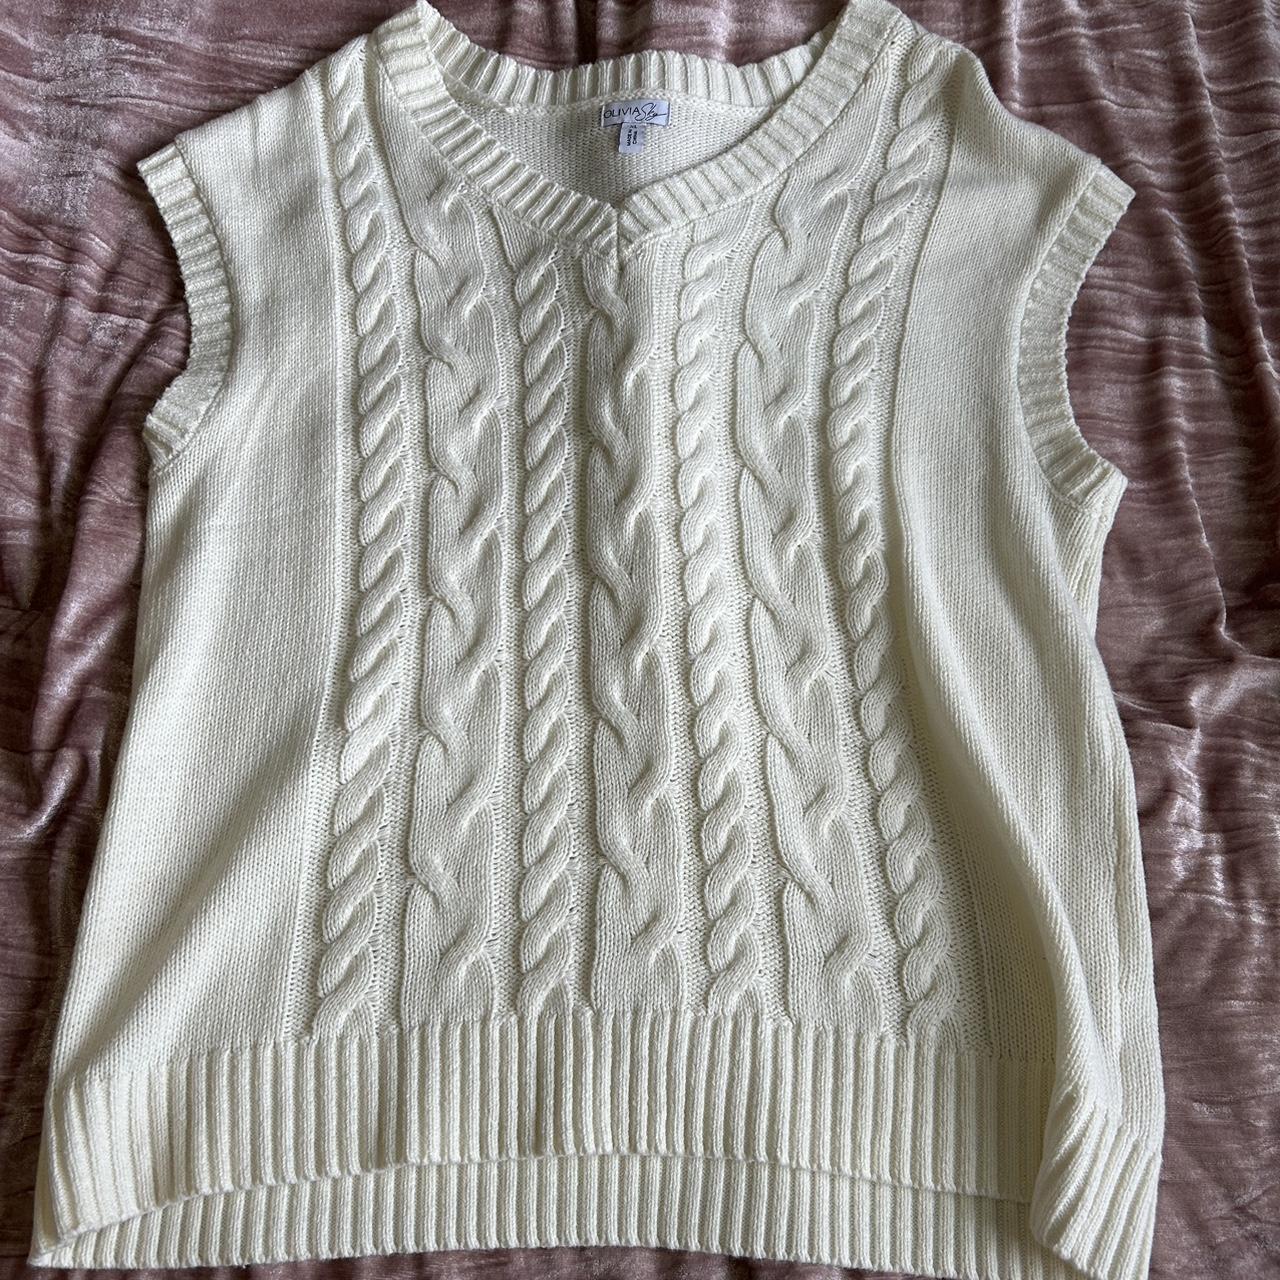 olivia sky white sweater vest •size: XL but fits... - Depop